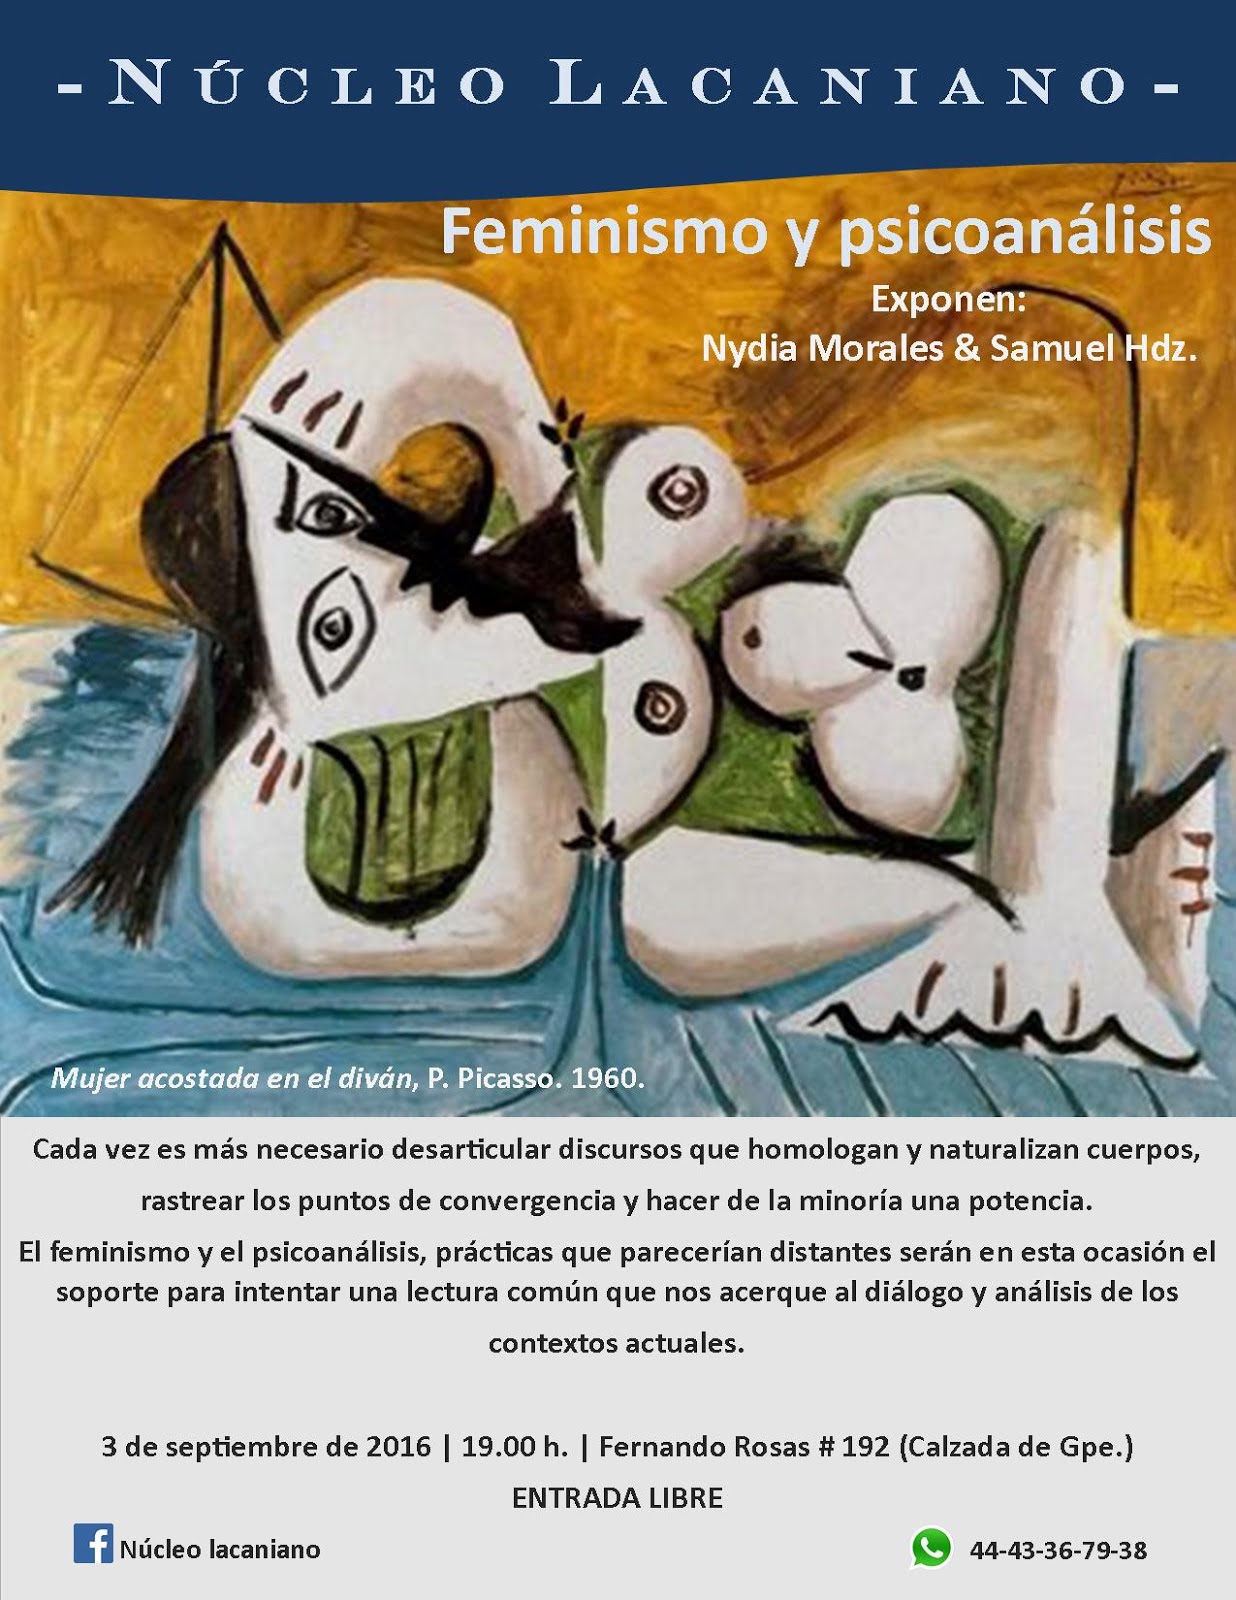 Feminismo y psicoanálisis